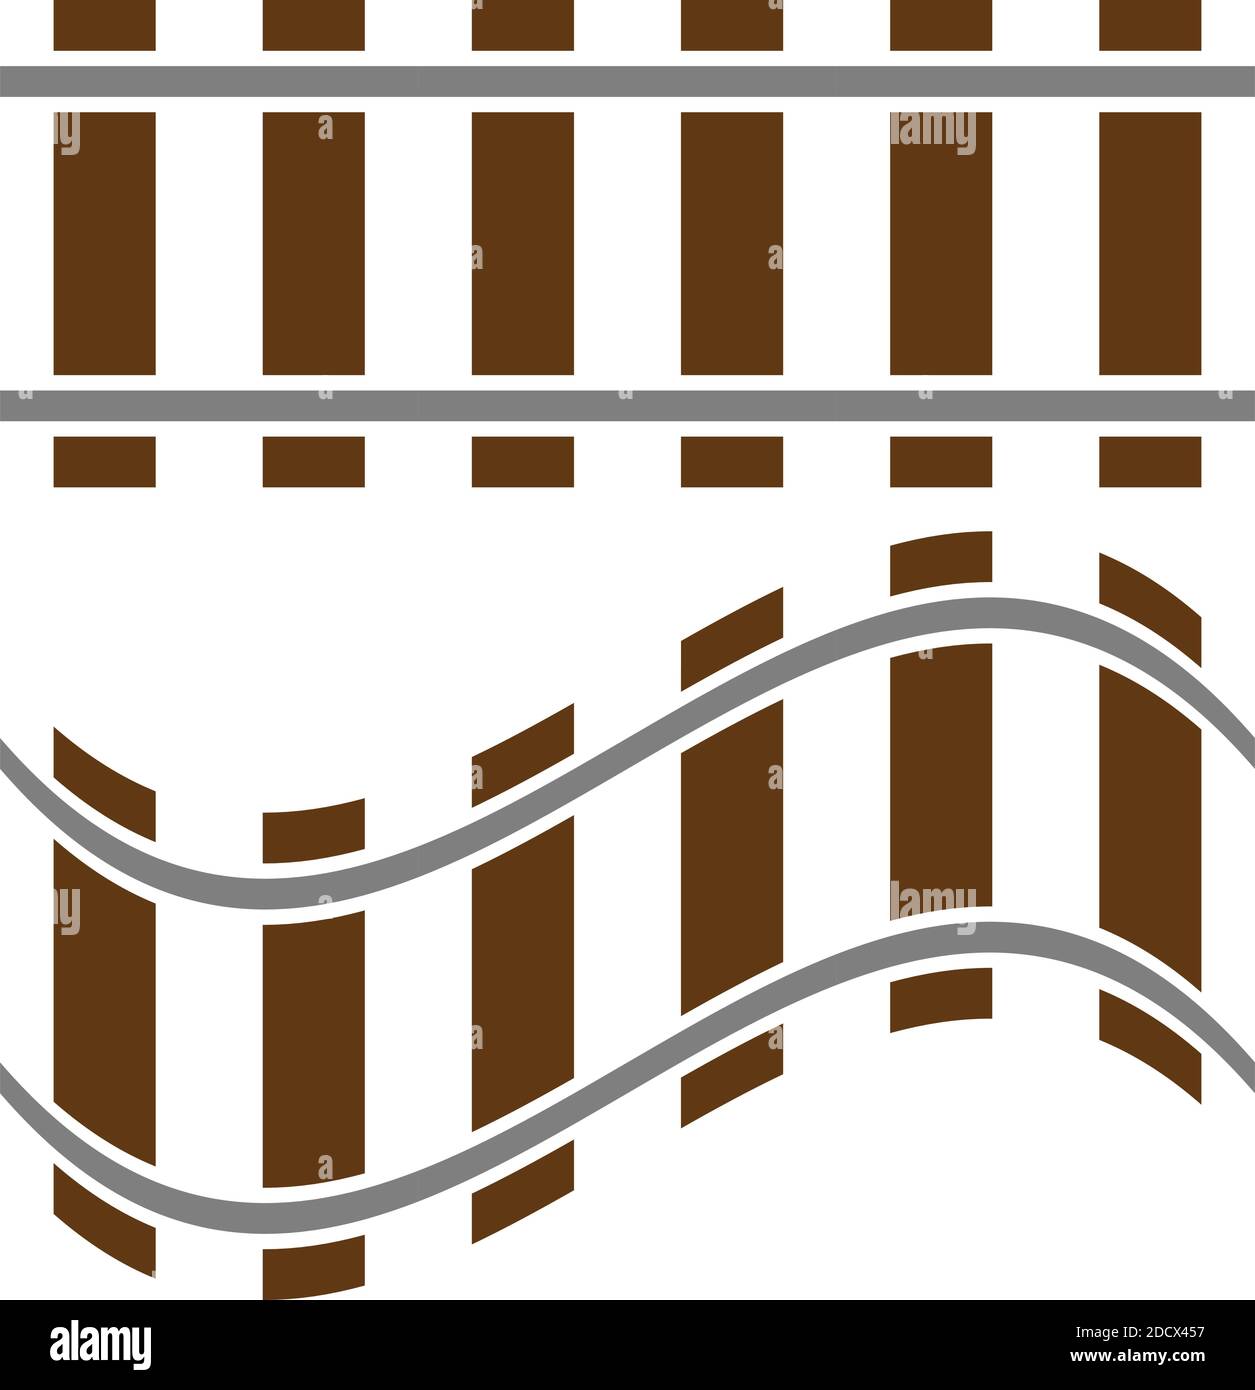 Eisenbahn, Bahnstrecke, Bahnkontur, Silhouettenvektor. Straßenbahn, U-Bahn, U-Bahn-Pfad – Stock Illustration, Clip Art Grafiken Stock Vektor